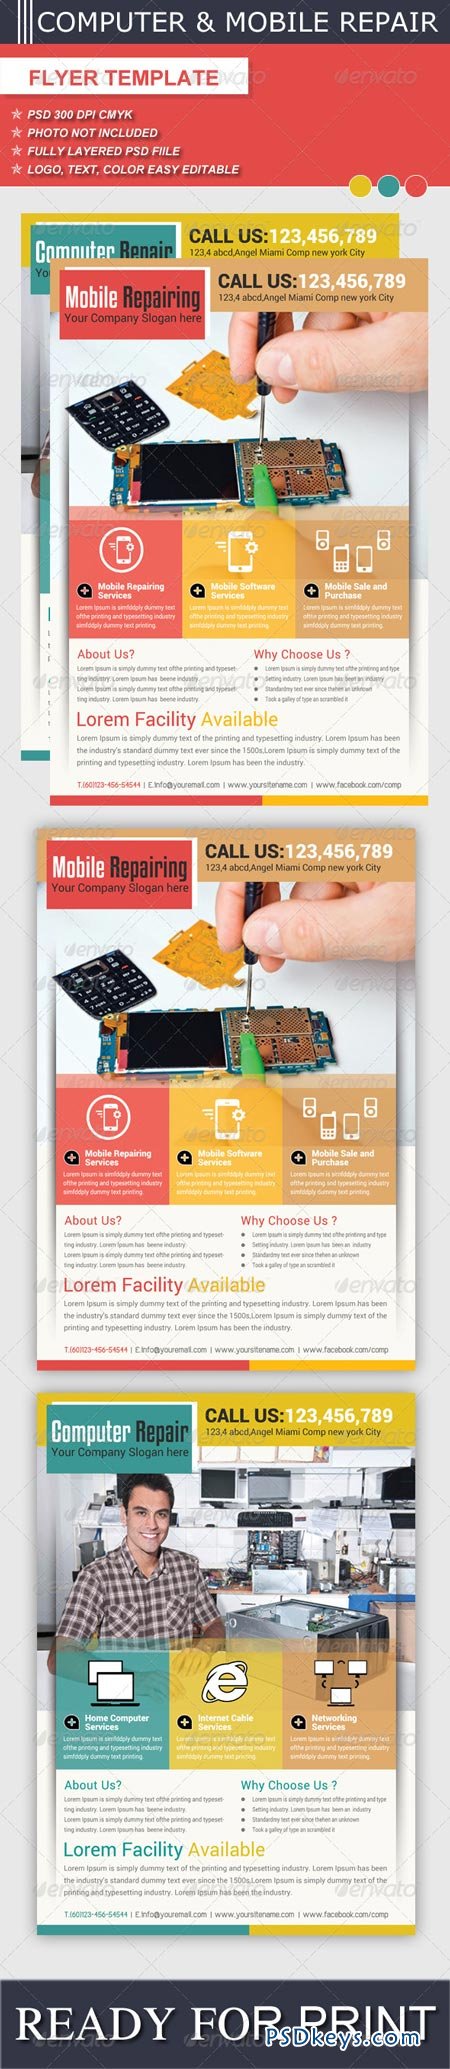 Computer & Mobile Repair Flyer Template 6217430